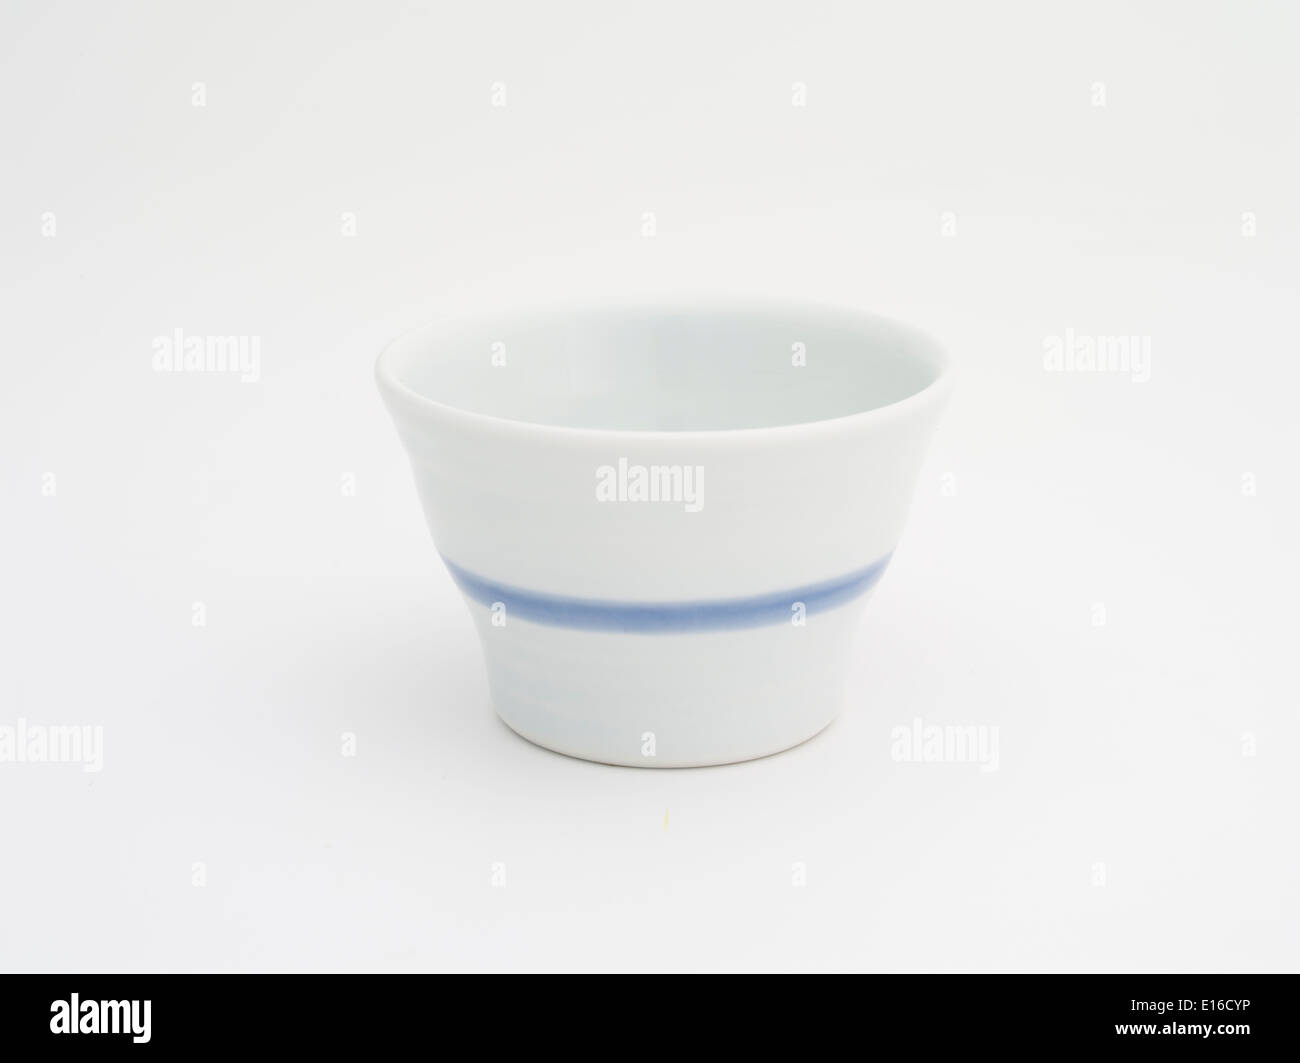 Simple Sake Cup on sale in Arita, Japan at the Arita Ceramics Fair for 100 yen (US$1) Stock Photo